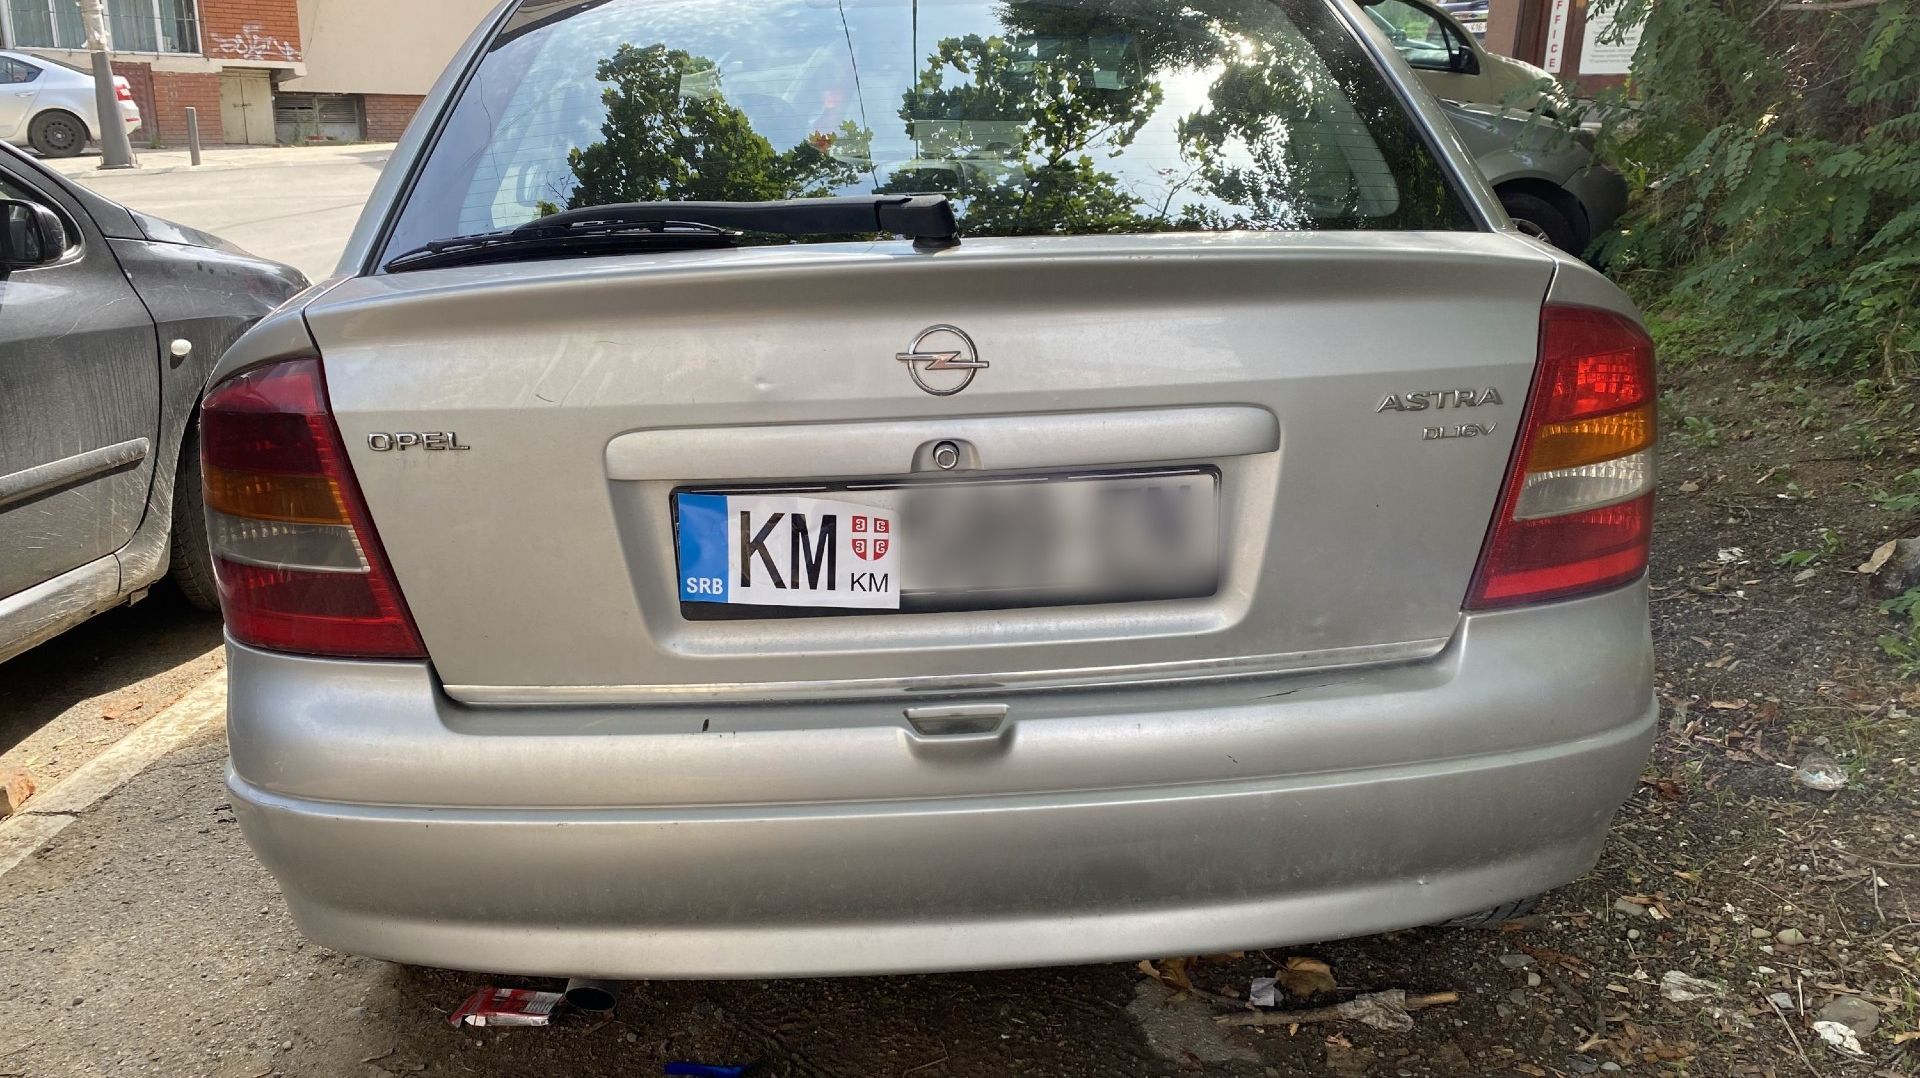 Les plaques d’immatriculation avec les initiales « KM », pour « Kosovska Mitrovica », ne sont pas reconnues au Kosovo, en dehors des quatre communautés serbes au nord du pays.